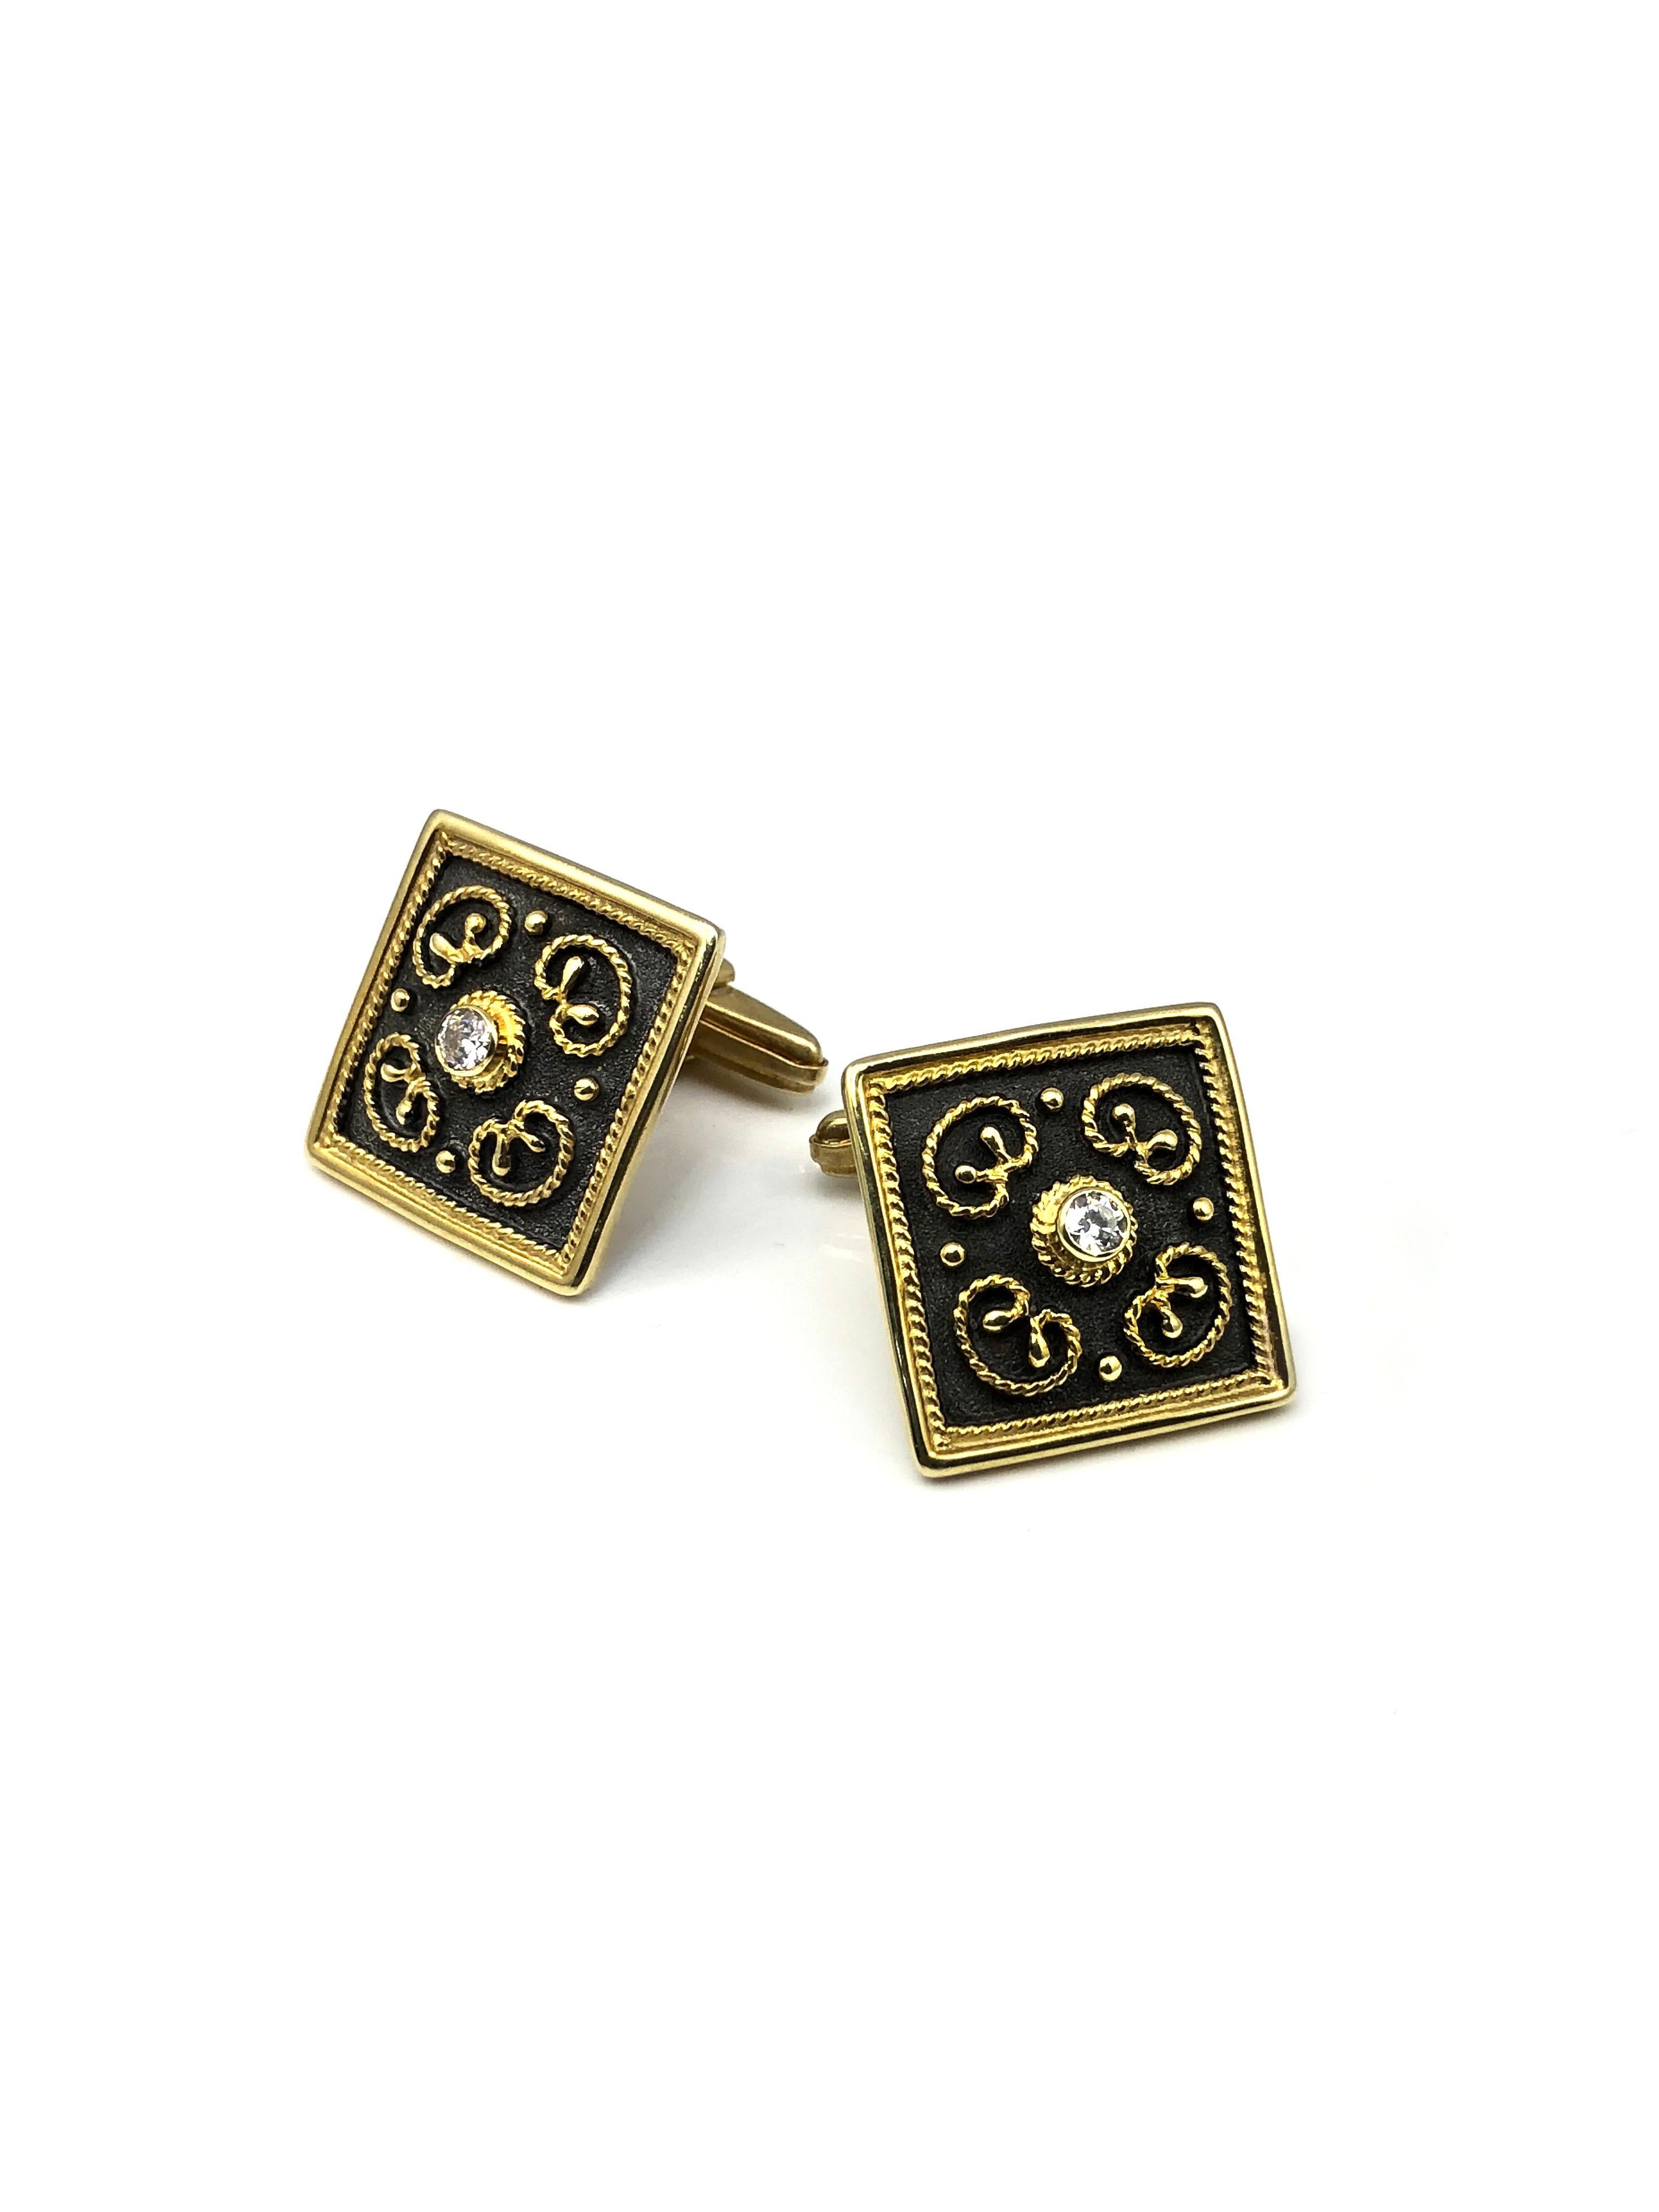 Les boutons de manchette de la marque S.Georgios sont fabriqués à la main en or jaune 18 carats et en rhodium oxydé noir, sur mesure. Les boutons de manchette sont décorés au microscope avec un travail de granulation dans le style byzantin et avec